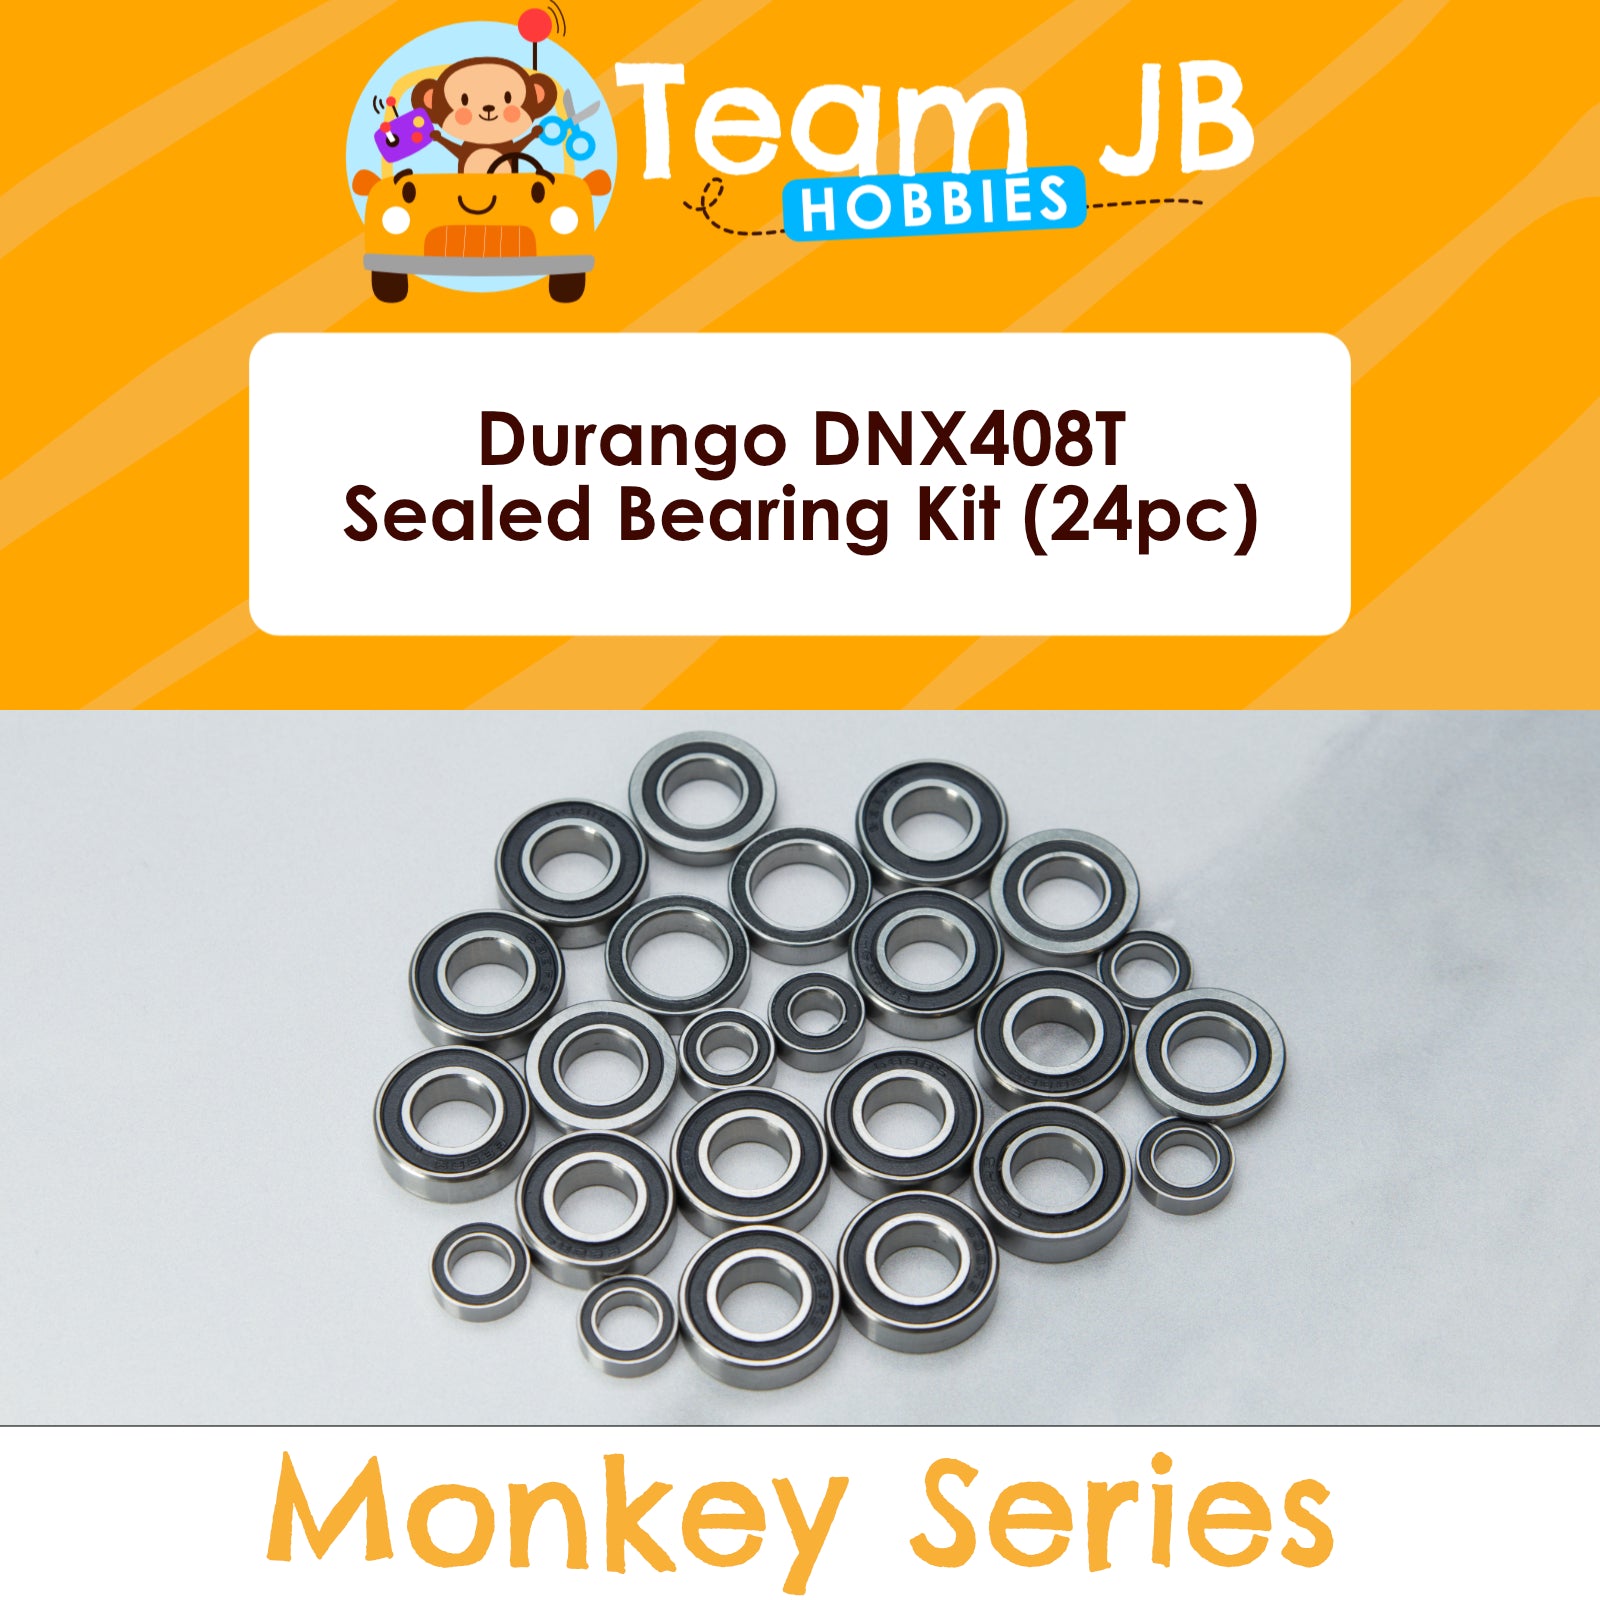 Durango DNX408T - Sealed Bearing Kit